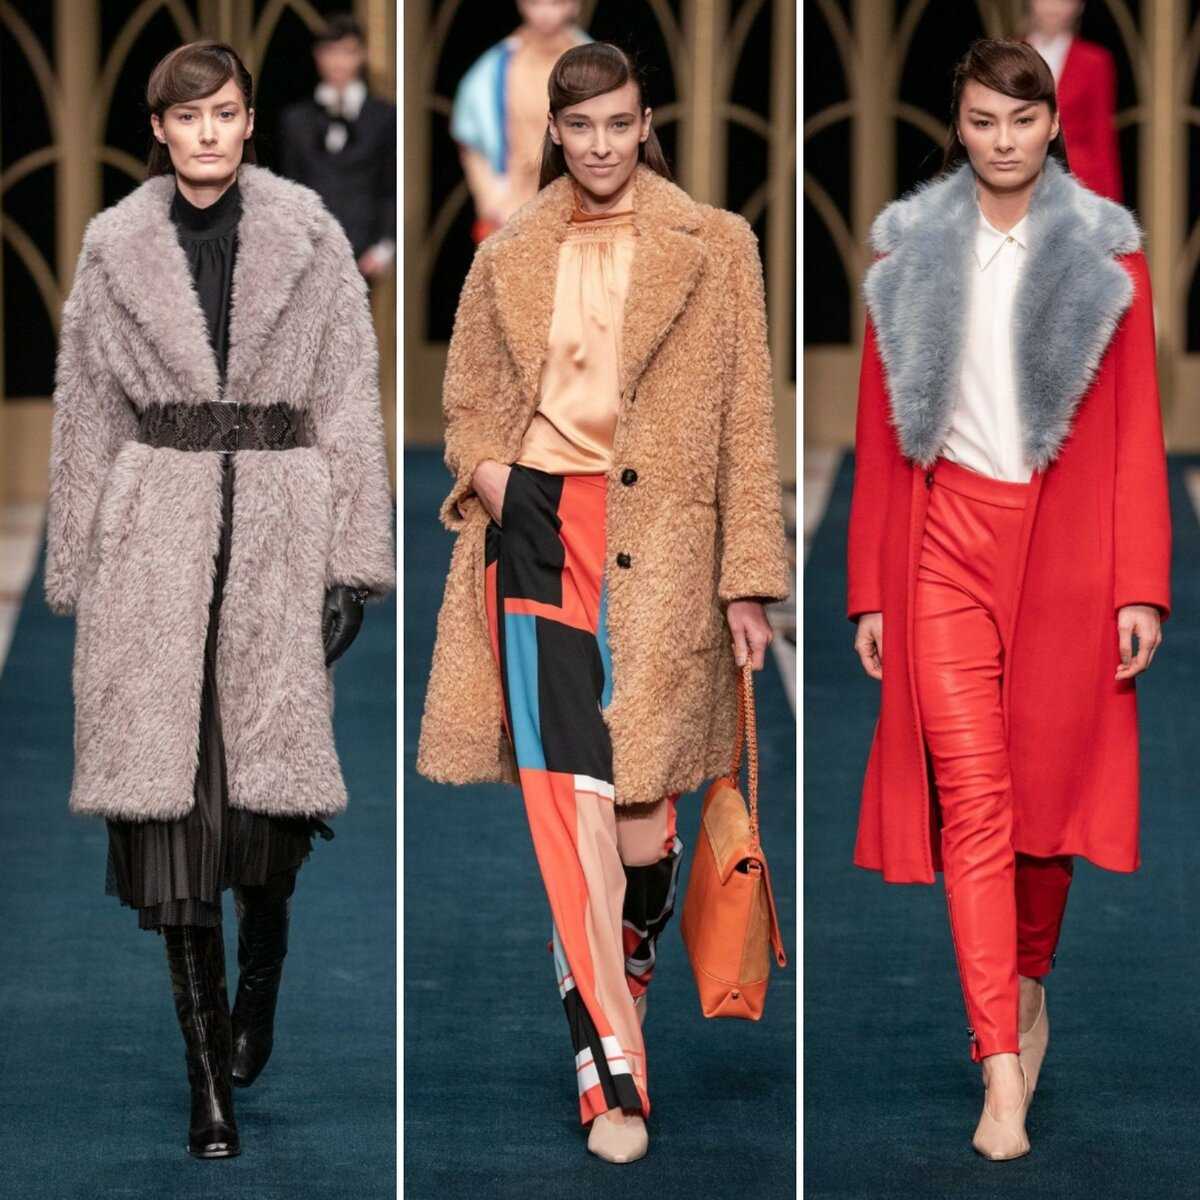 Верхняя одежда сезона осень  зима  должна быть теплой, яркой и модной Главные тенденции на фото Как выбрать модное женское пальто